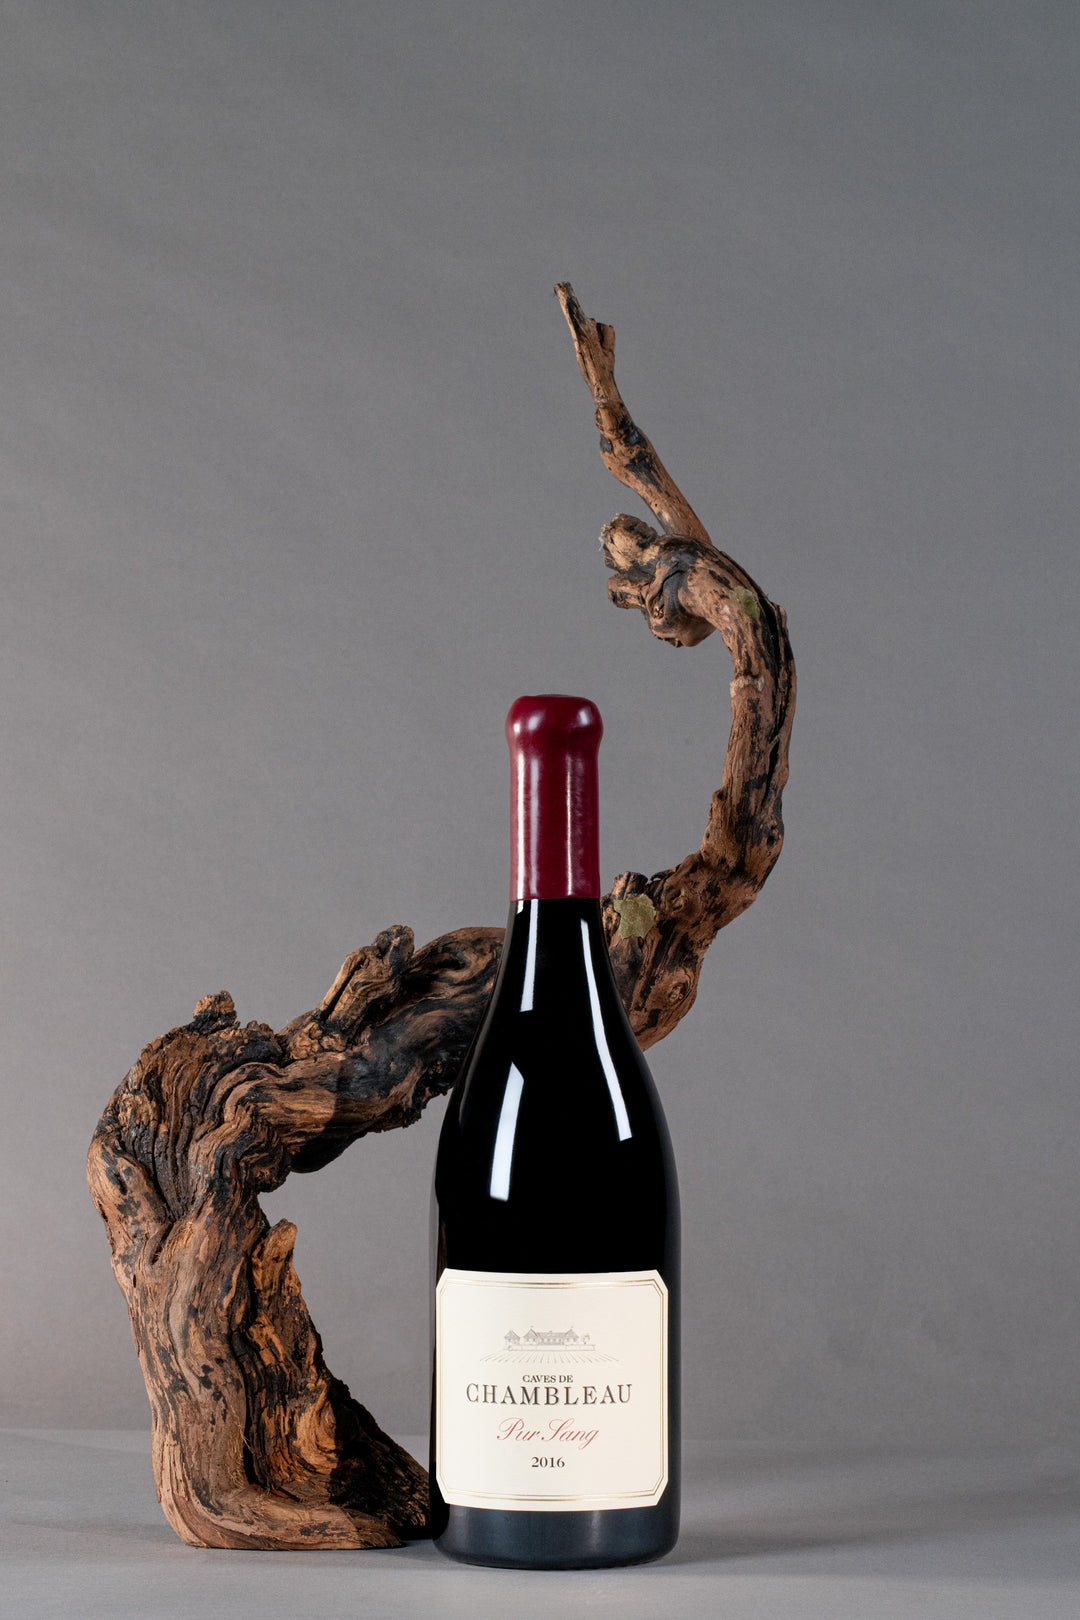 Domaine de Chambleau Pinot Noir "Pur Sang" 2016